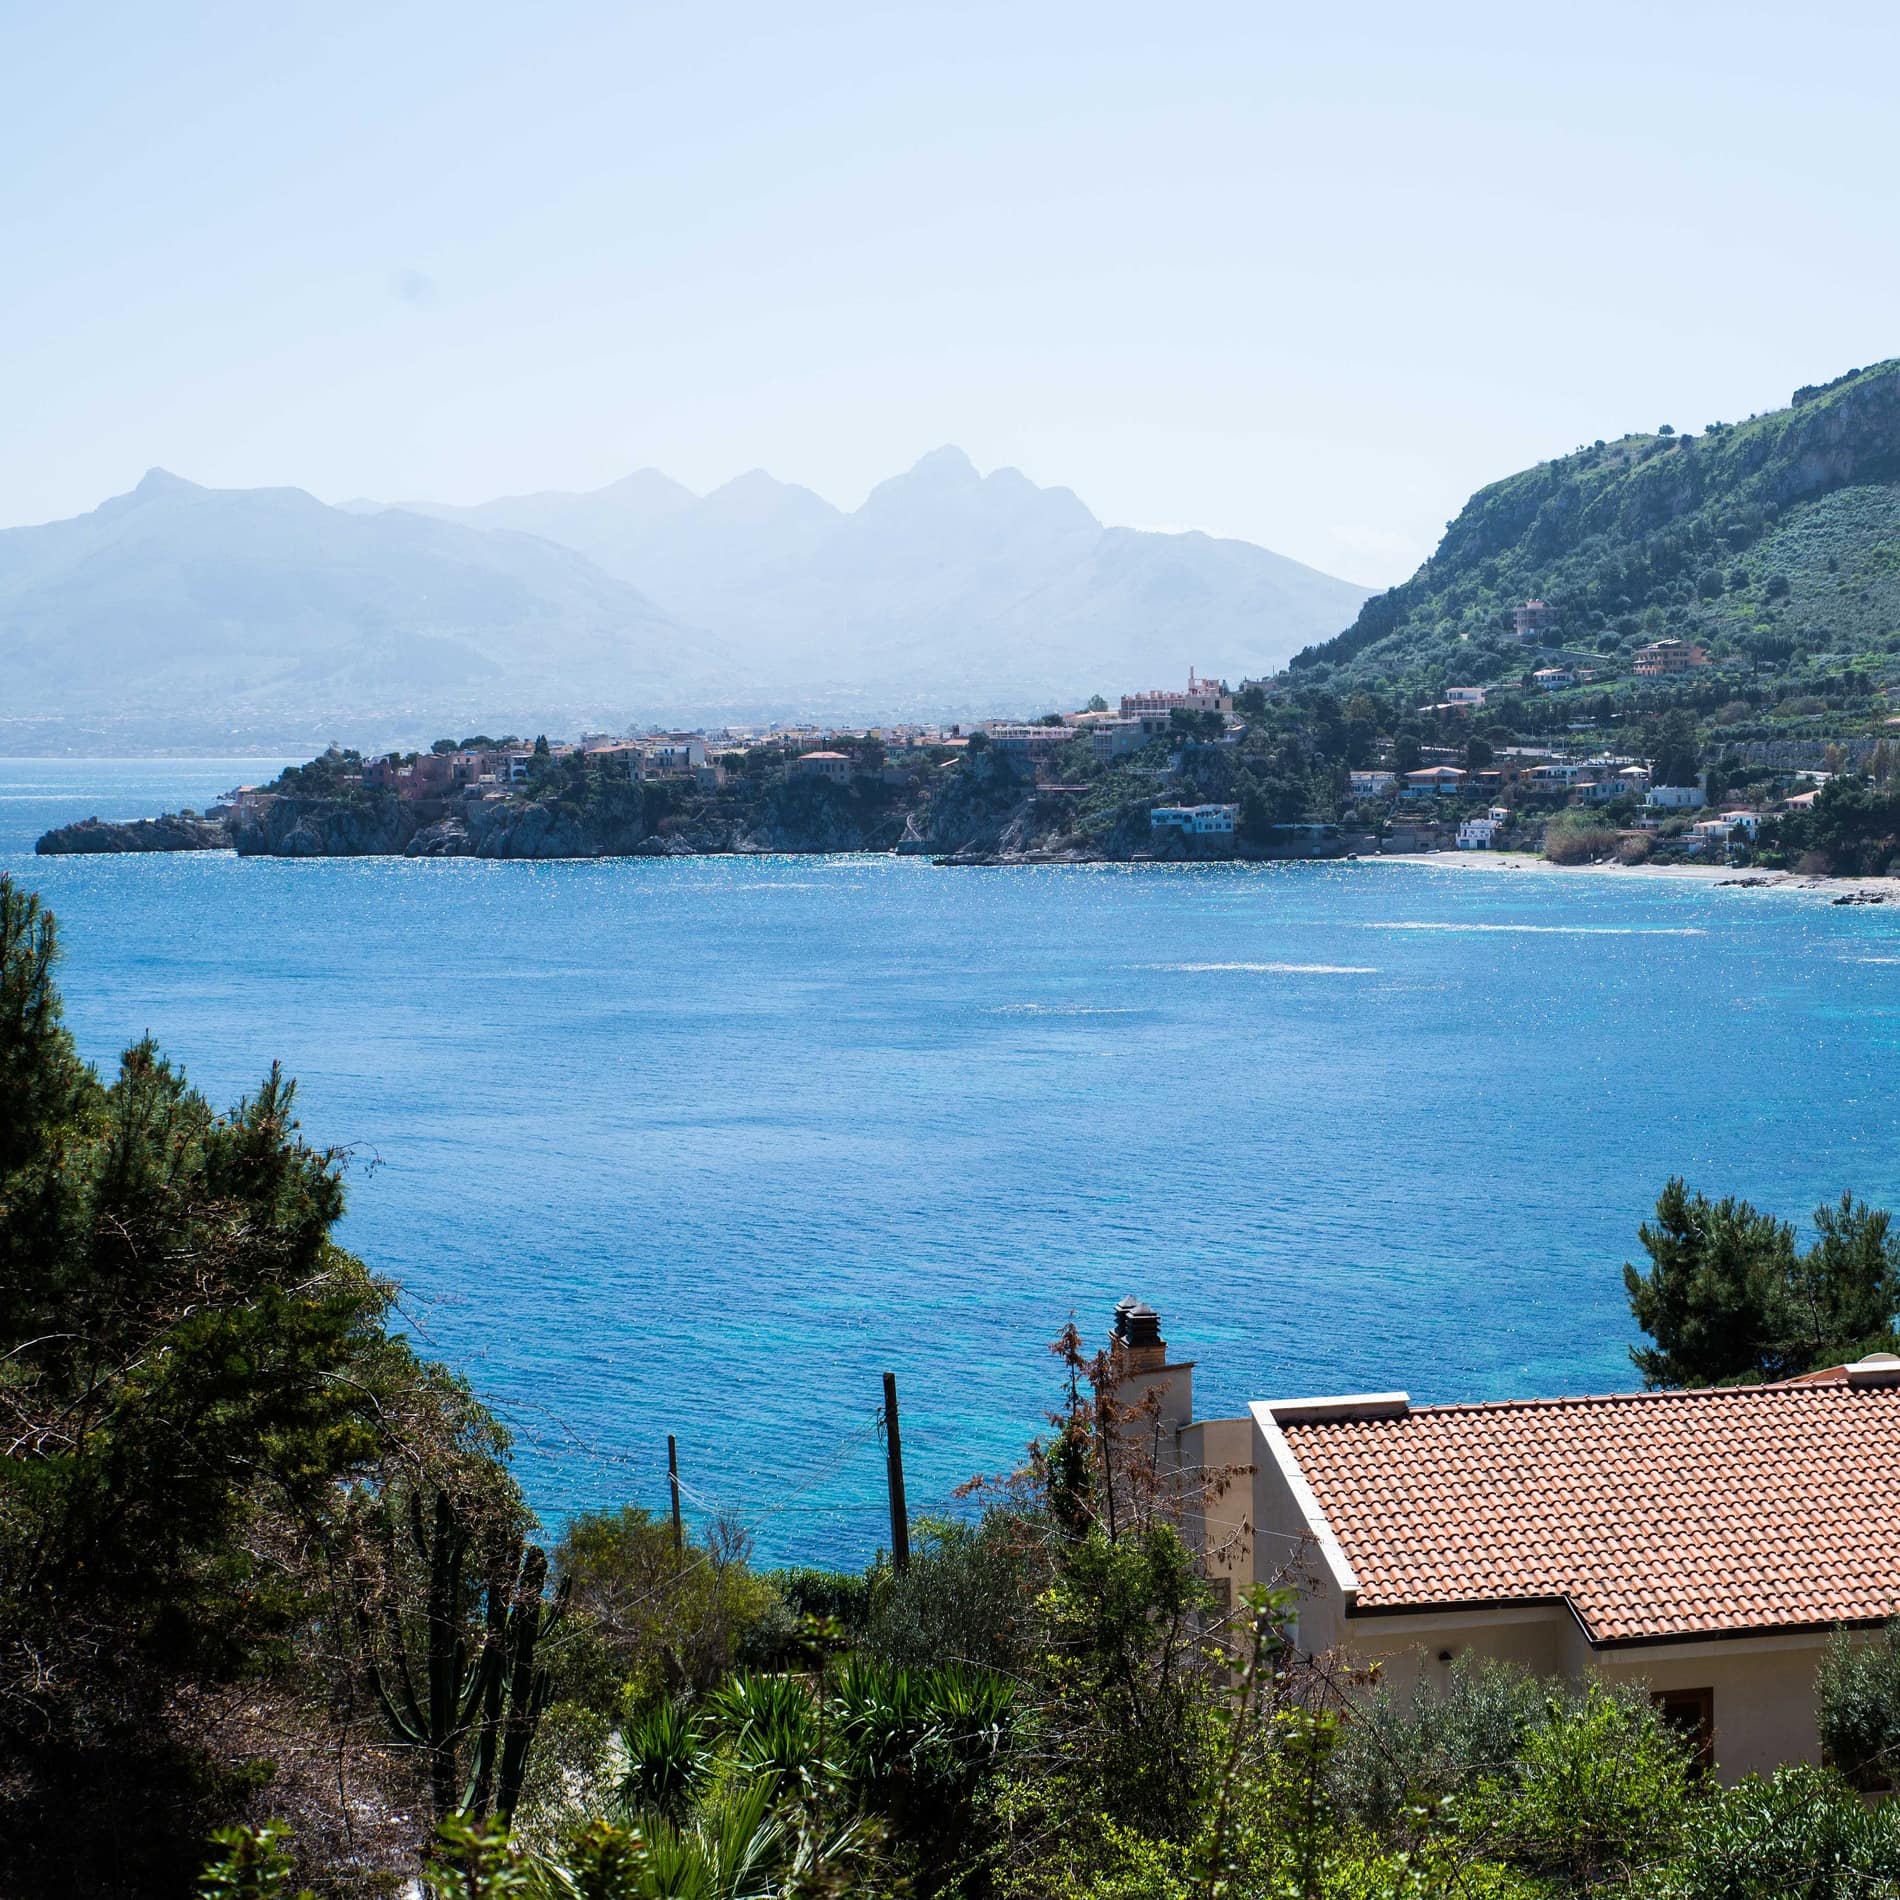 Ferienhäuser auf Sizilien in Meeresnähe